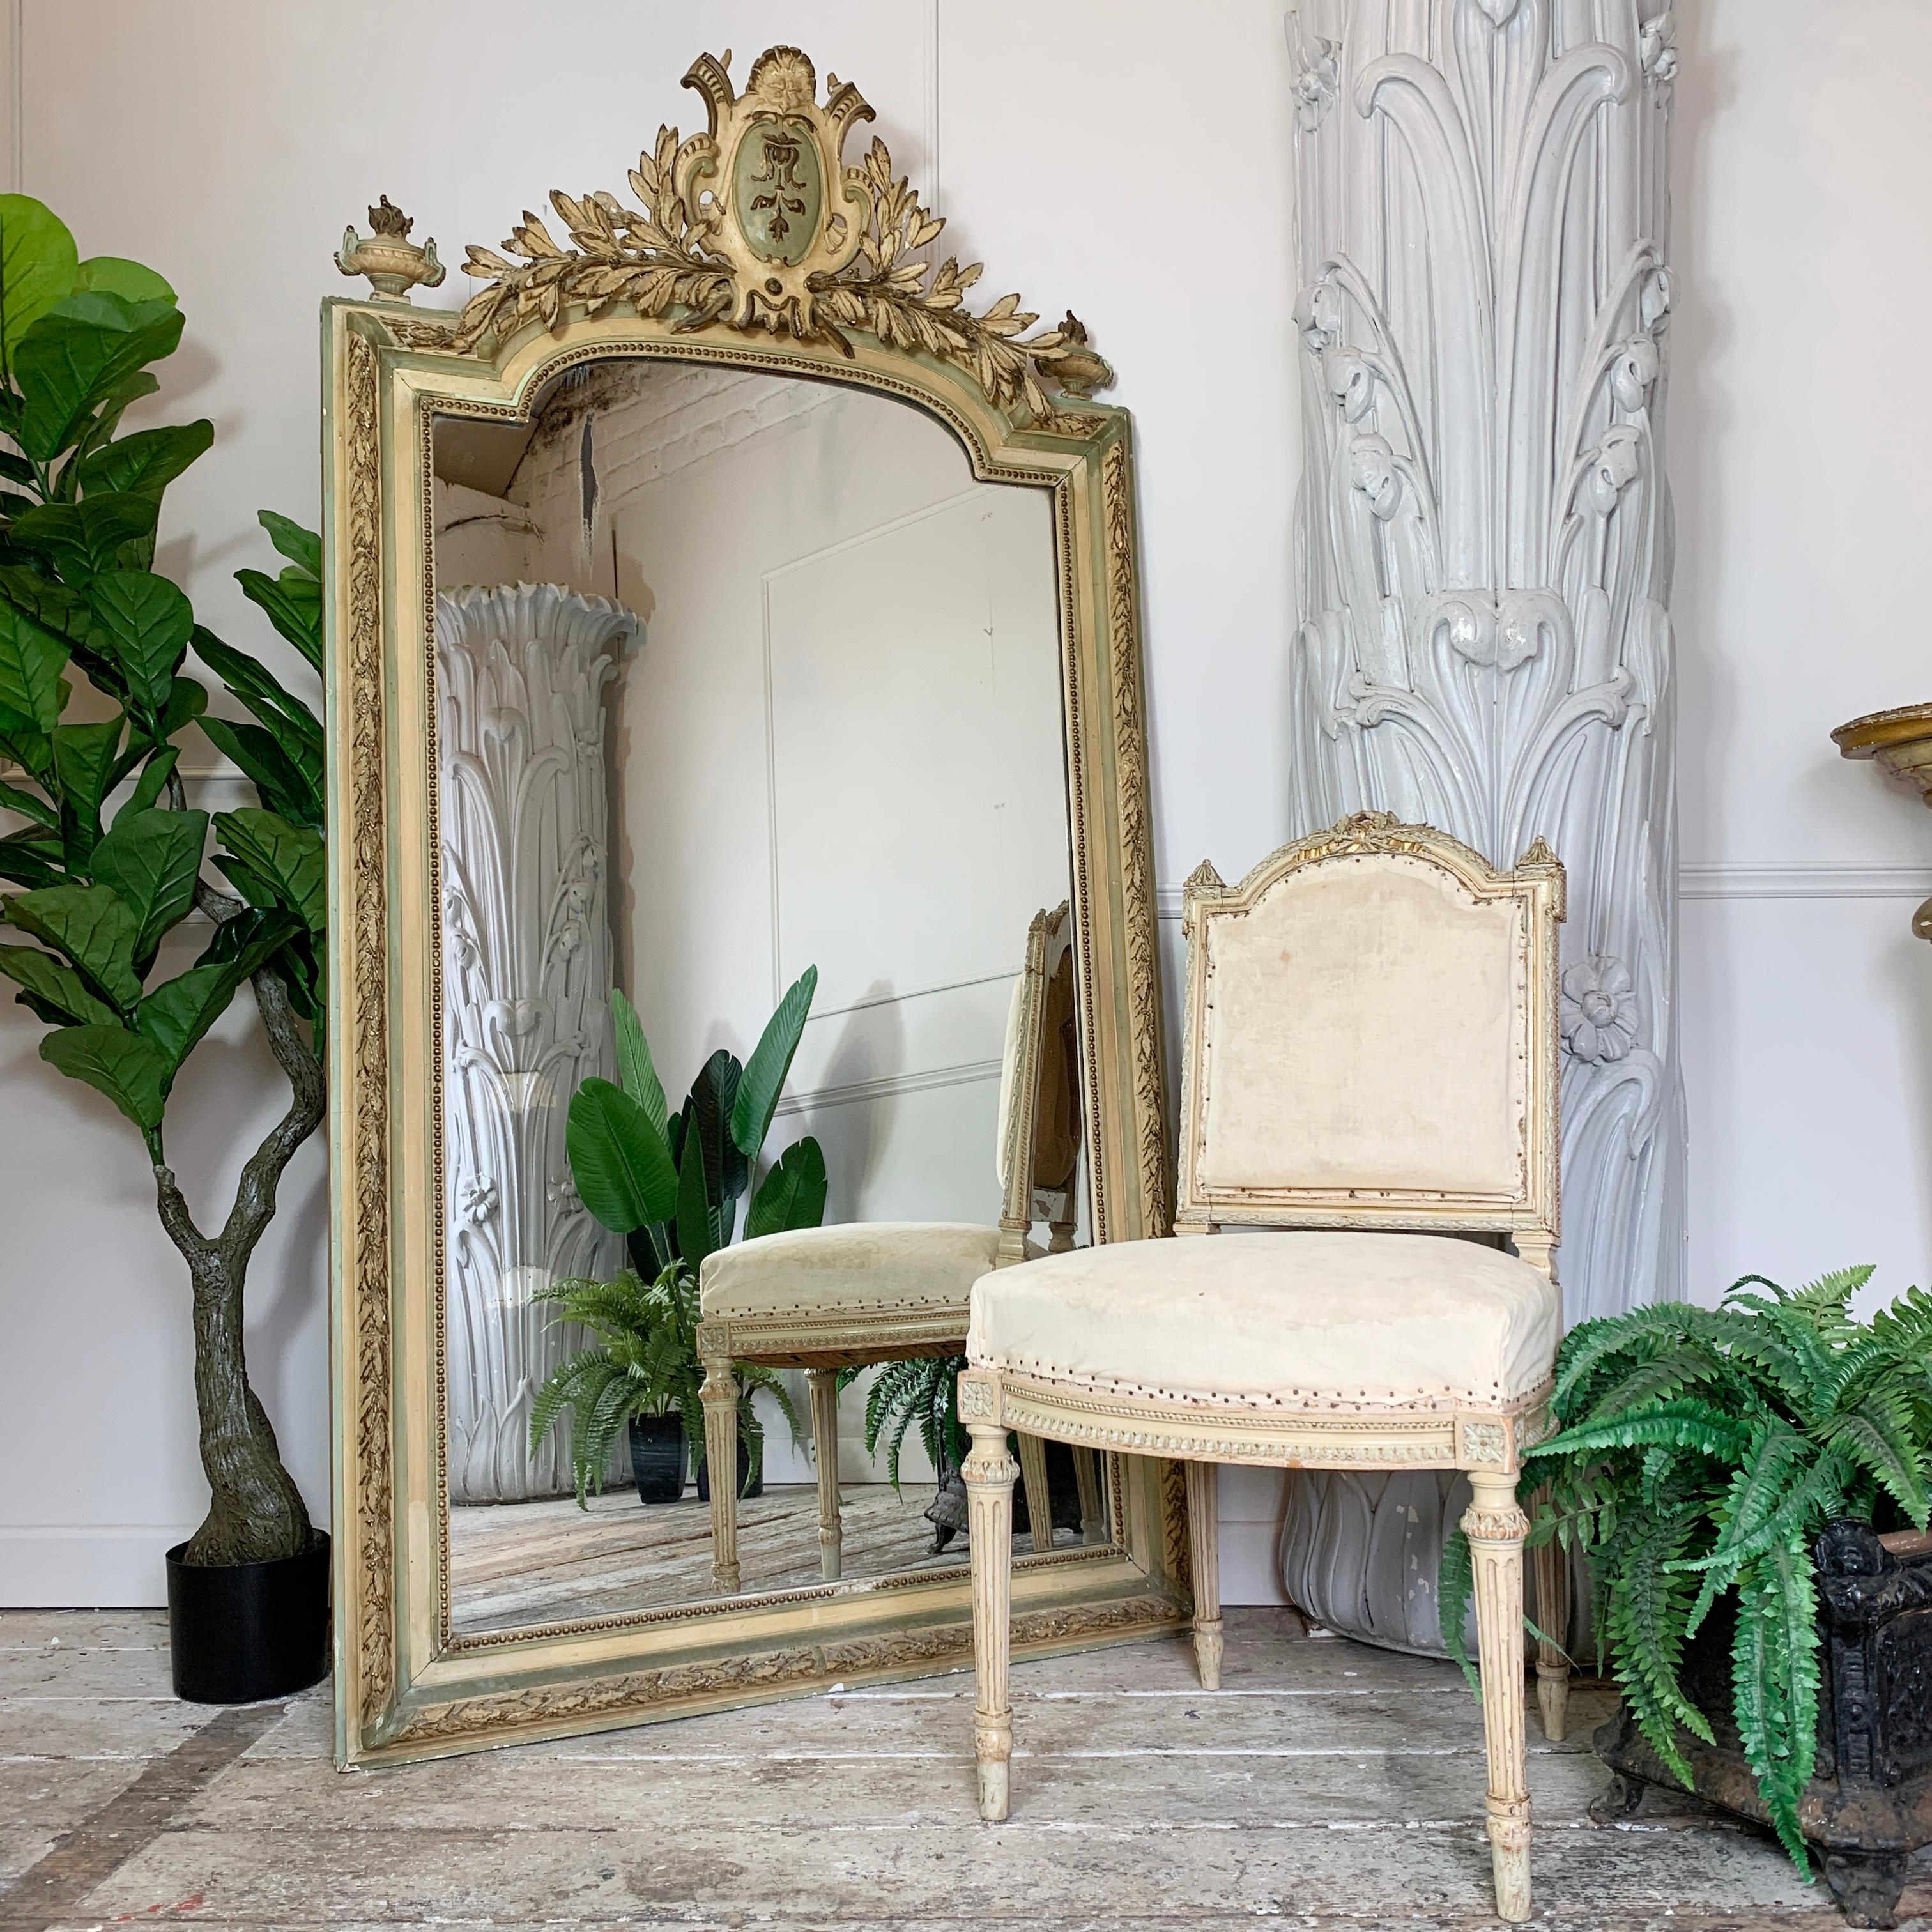 Eine wirklich außergewöhnliche und schöne sehr große gewölbte Französisch Spiegel, aus dem frühen 19. Jahrhundert, wurde dieser Spiegel aus einem Schloss im Westen von Frankreich entfernt, insgesamt ist es in einem hervorragenden Zustand, mit nur